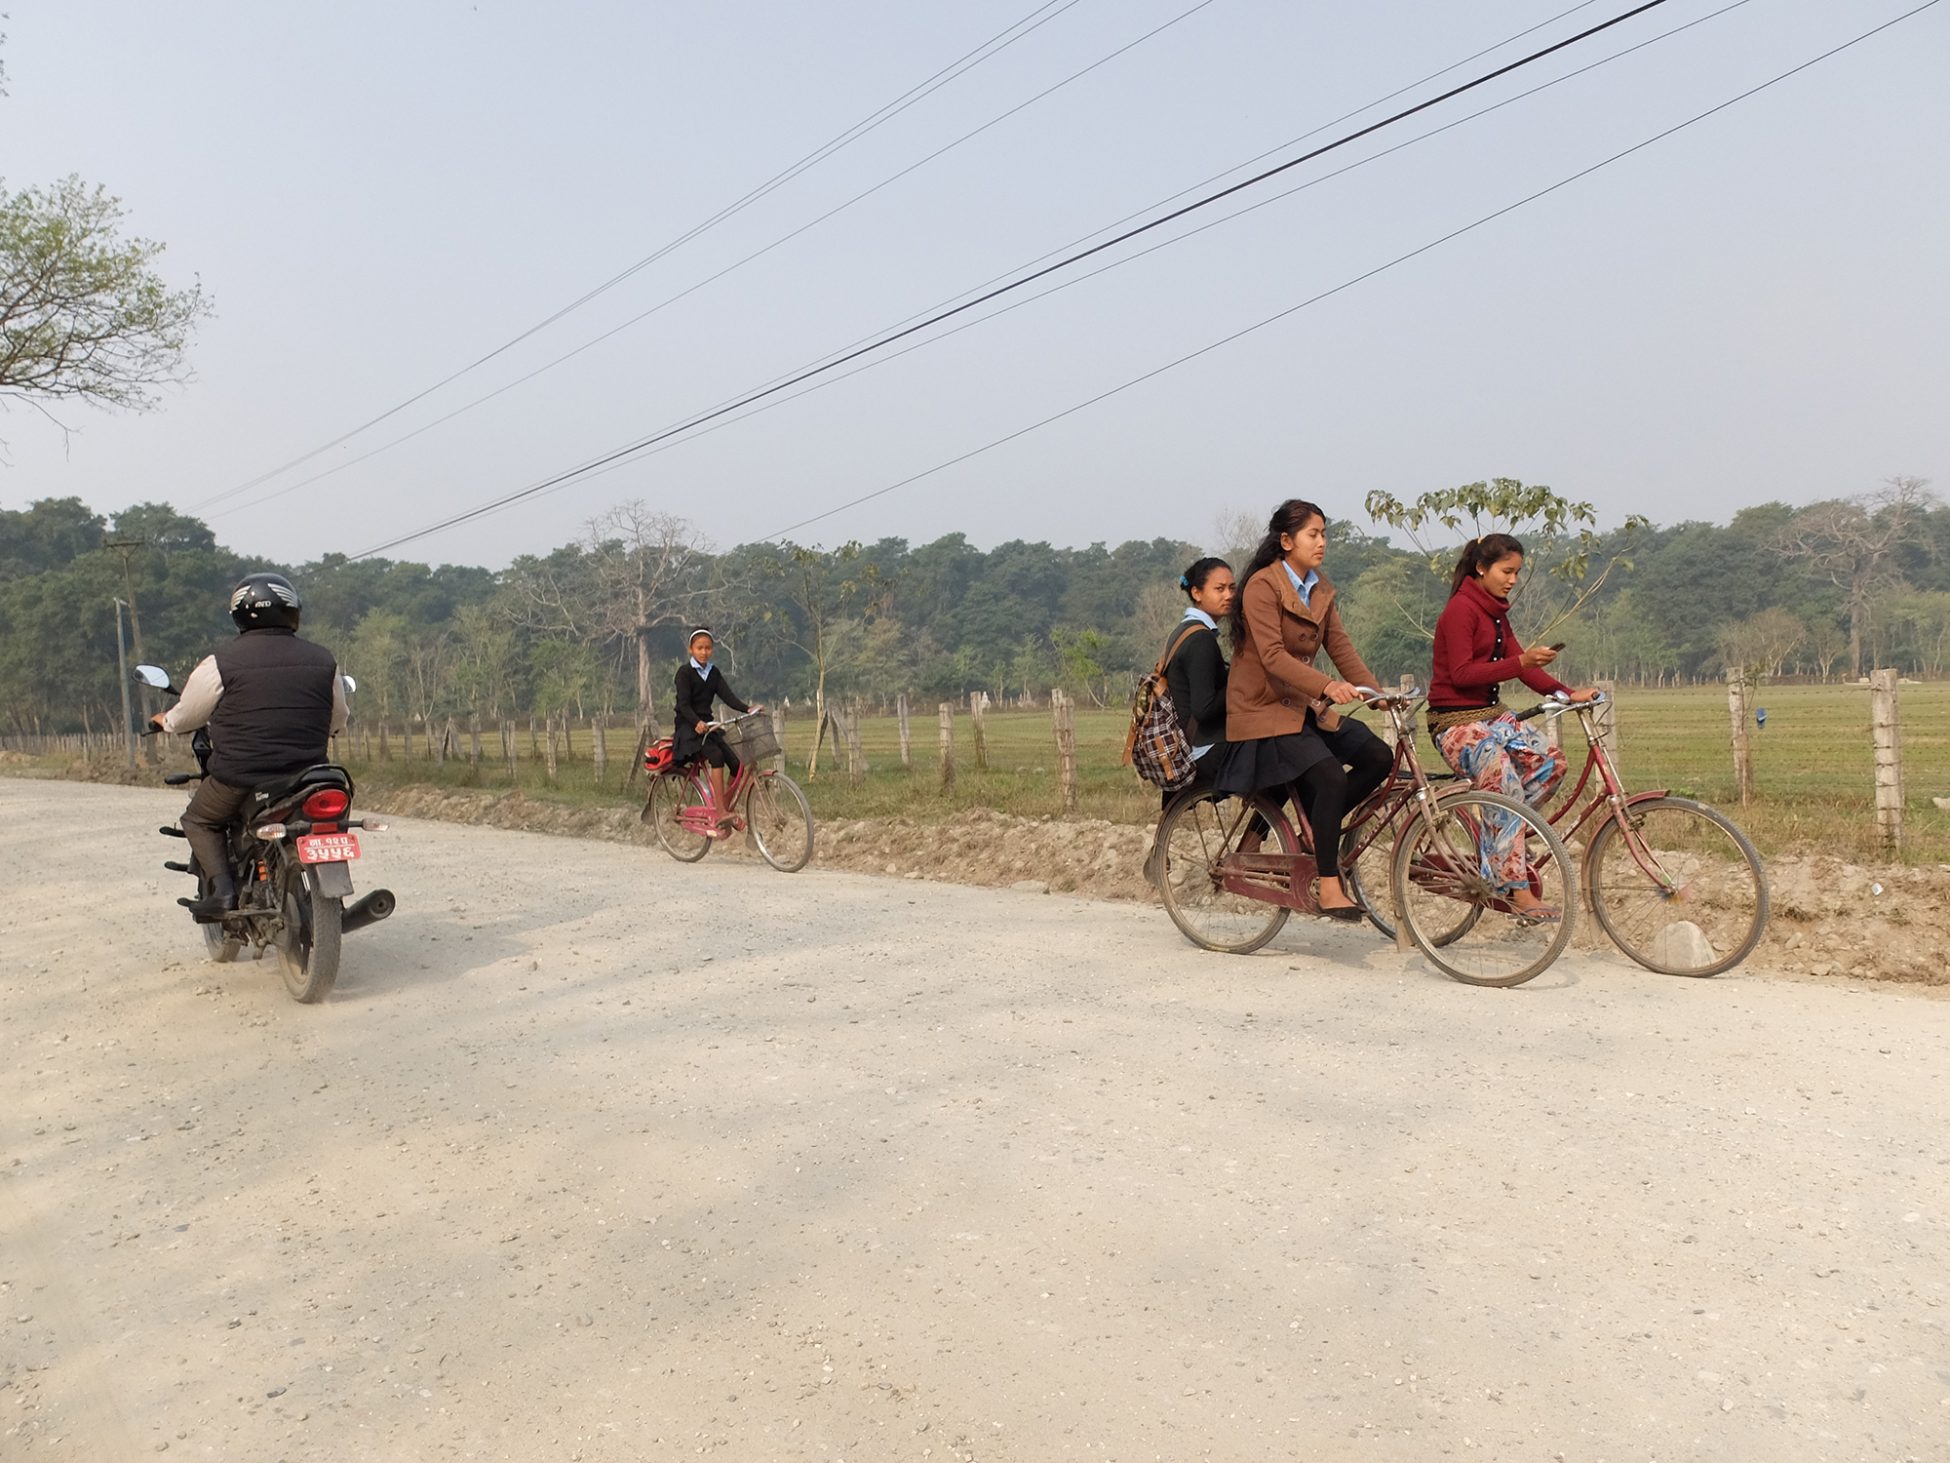 Fotografía de unas bicicletas en un camino anexo al Parque Nacional de Chitwan al sur de Nepal